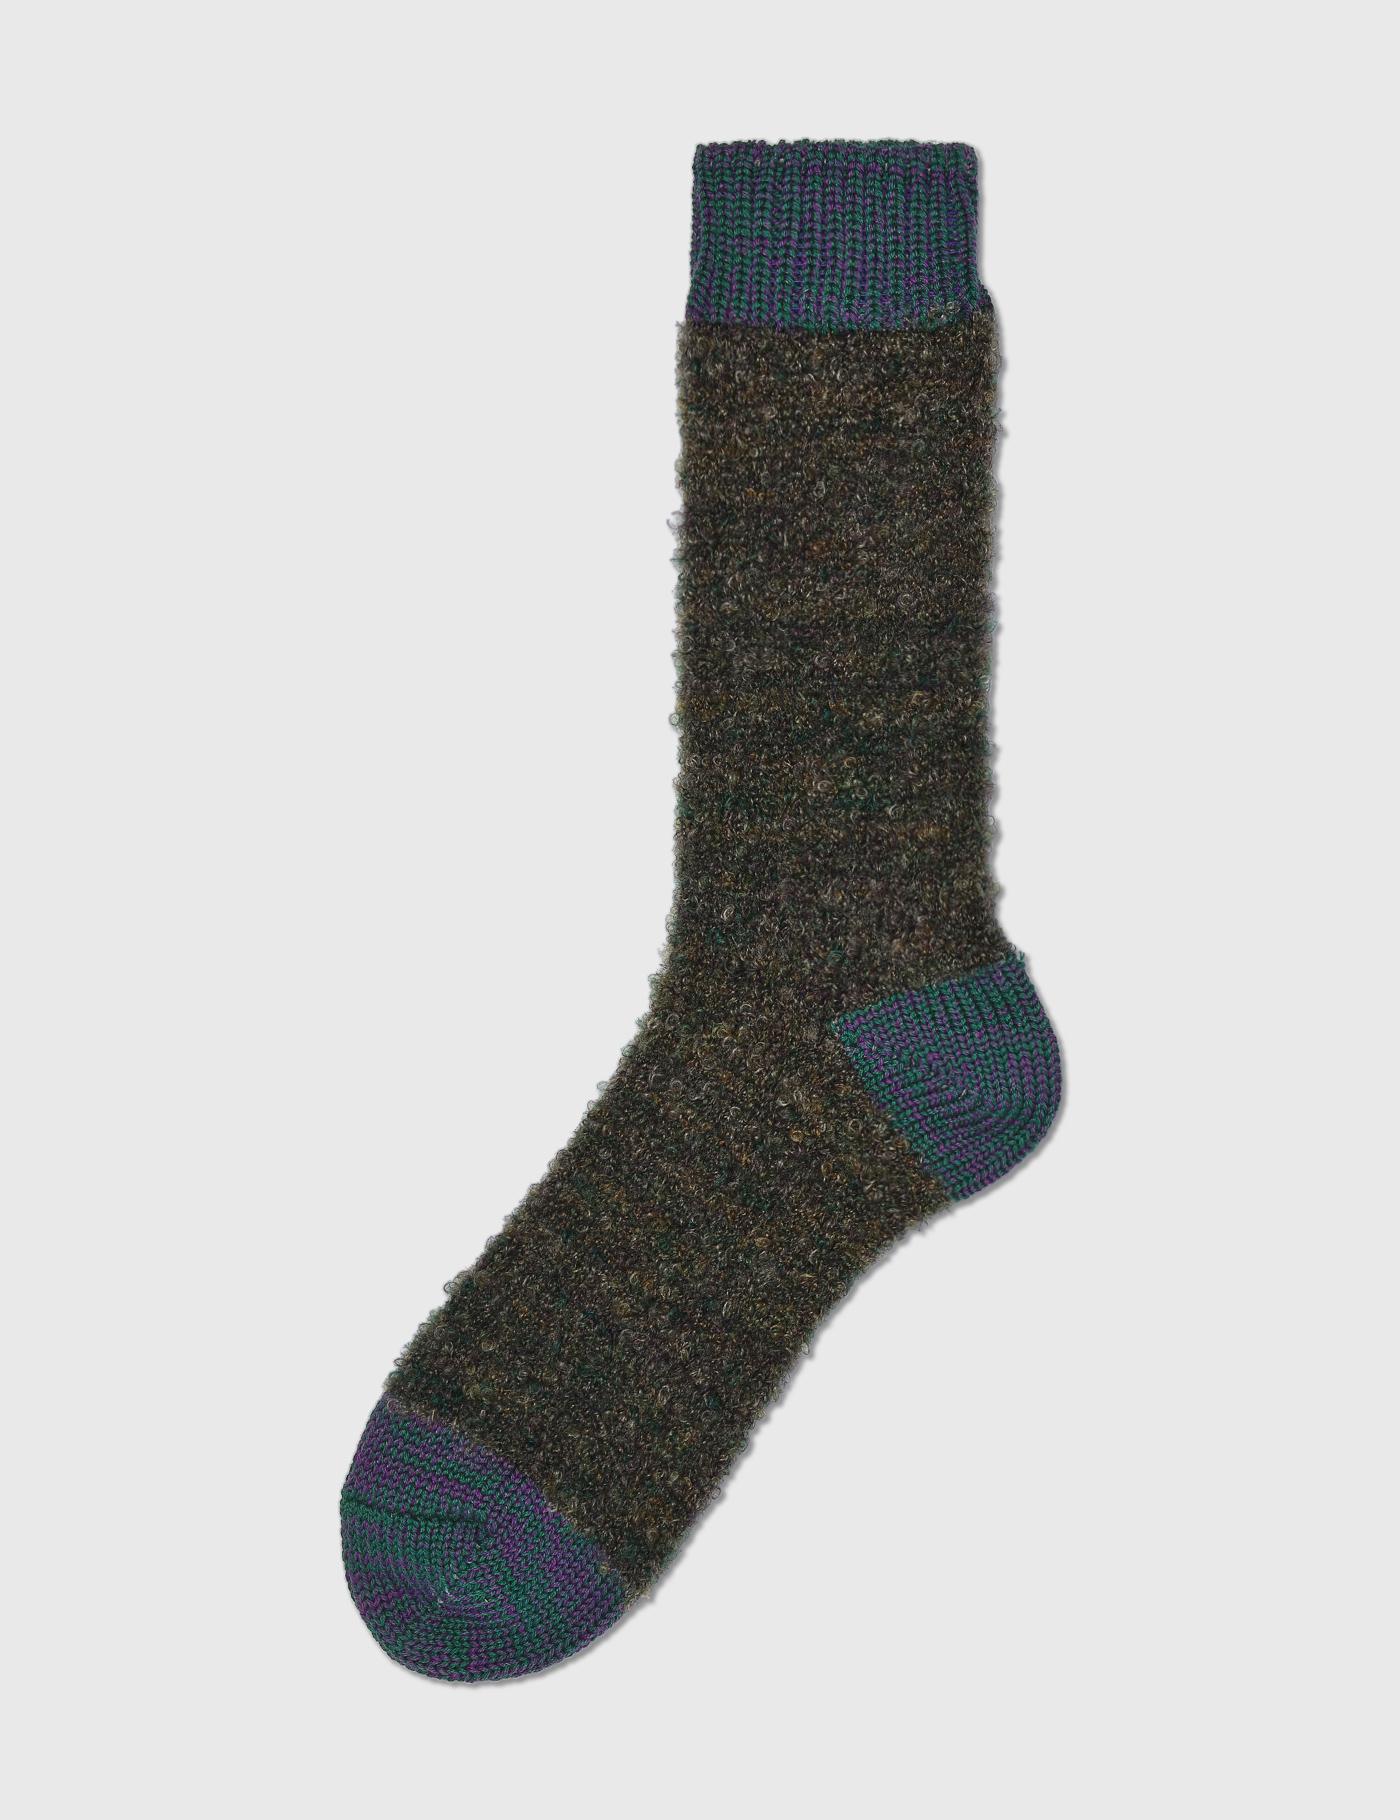 Mohair Wool Socks by DECKA